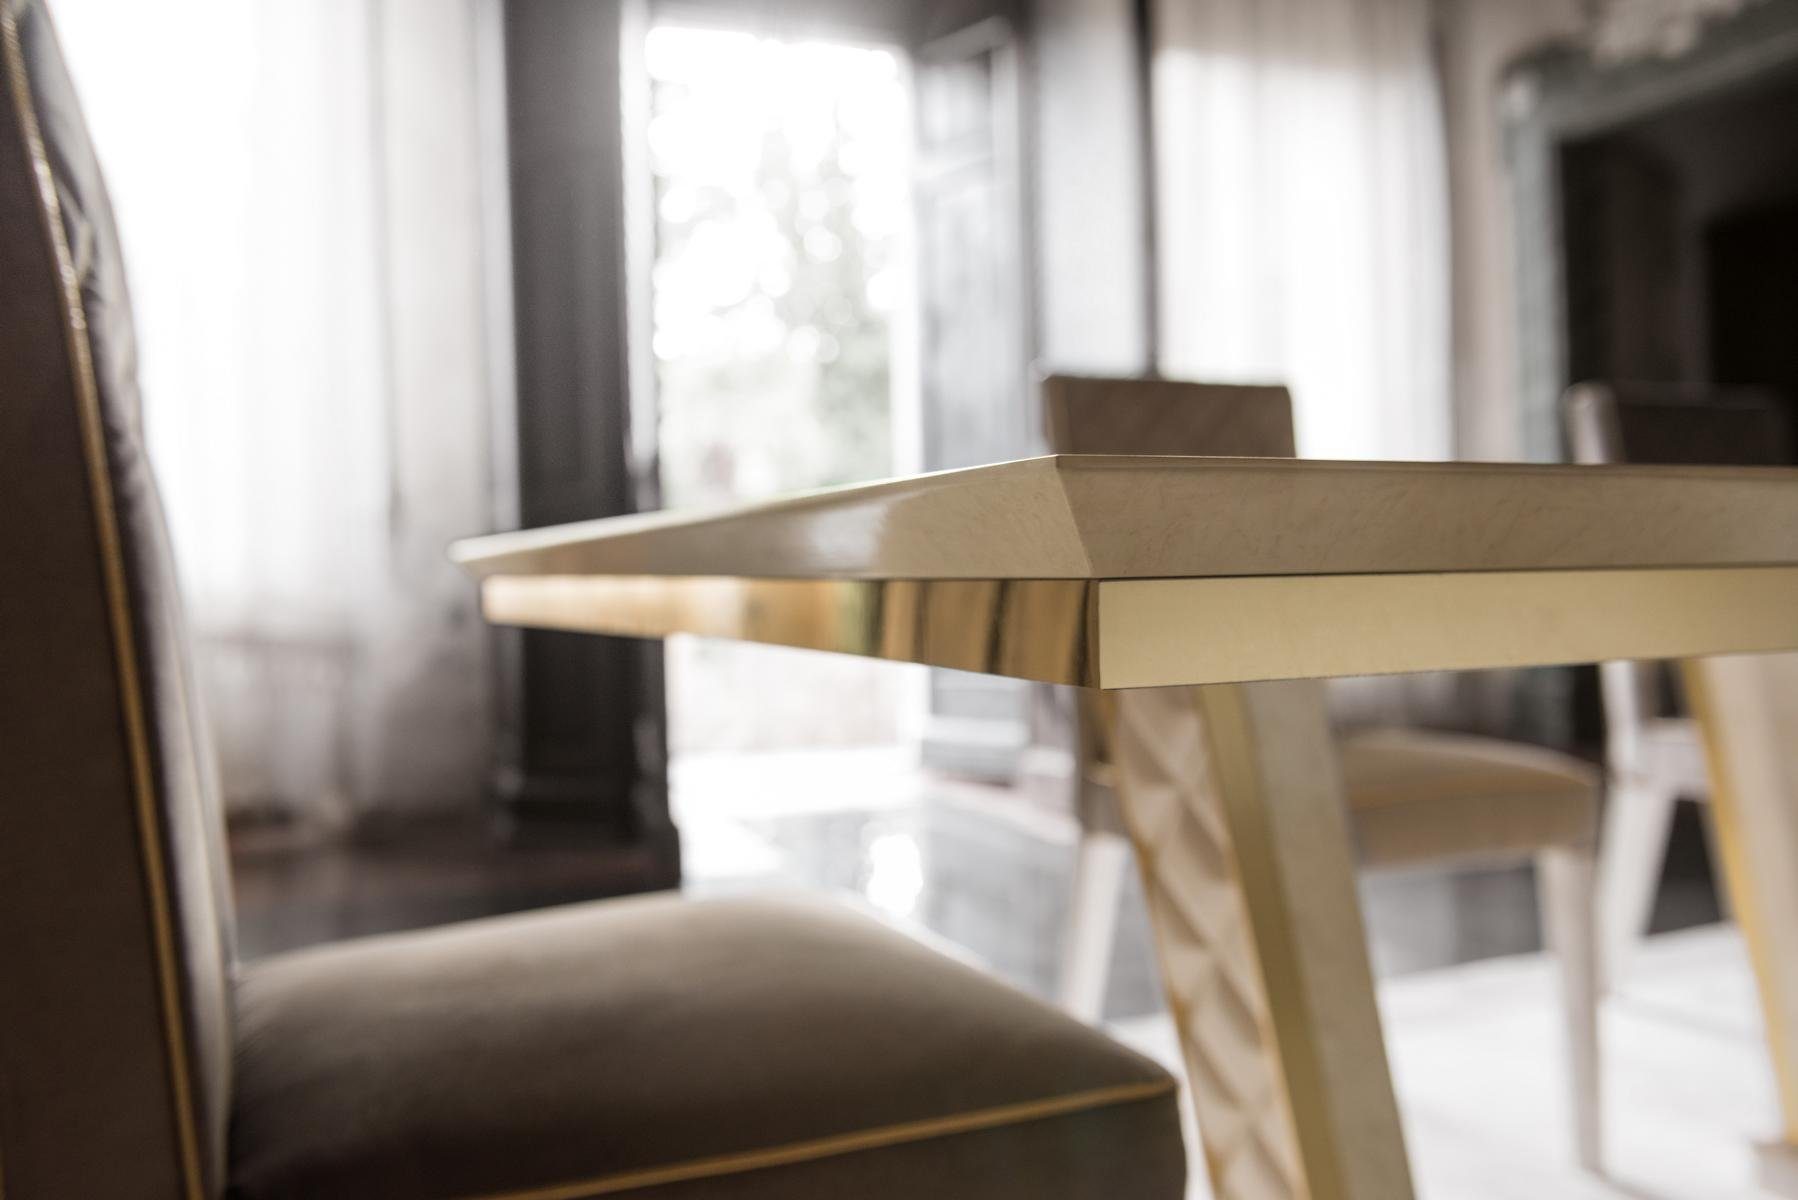 Designer 1 Holz Möbel Klassische Stuhl, arredoclassic™ JVmoebel Barock Stuhl Italienische Garnitur Esszimmer